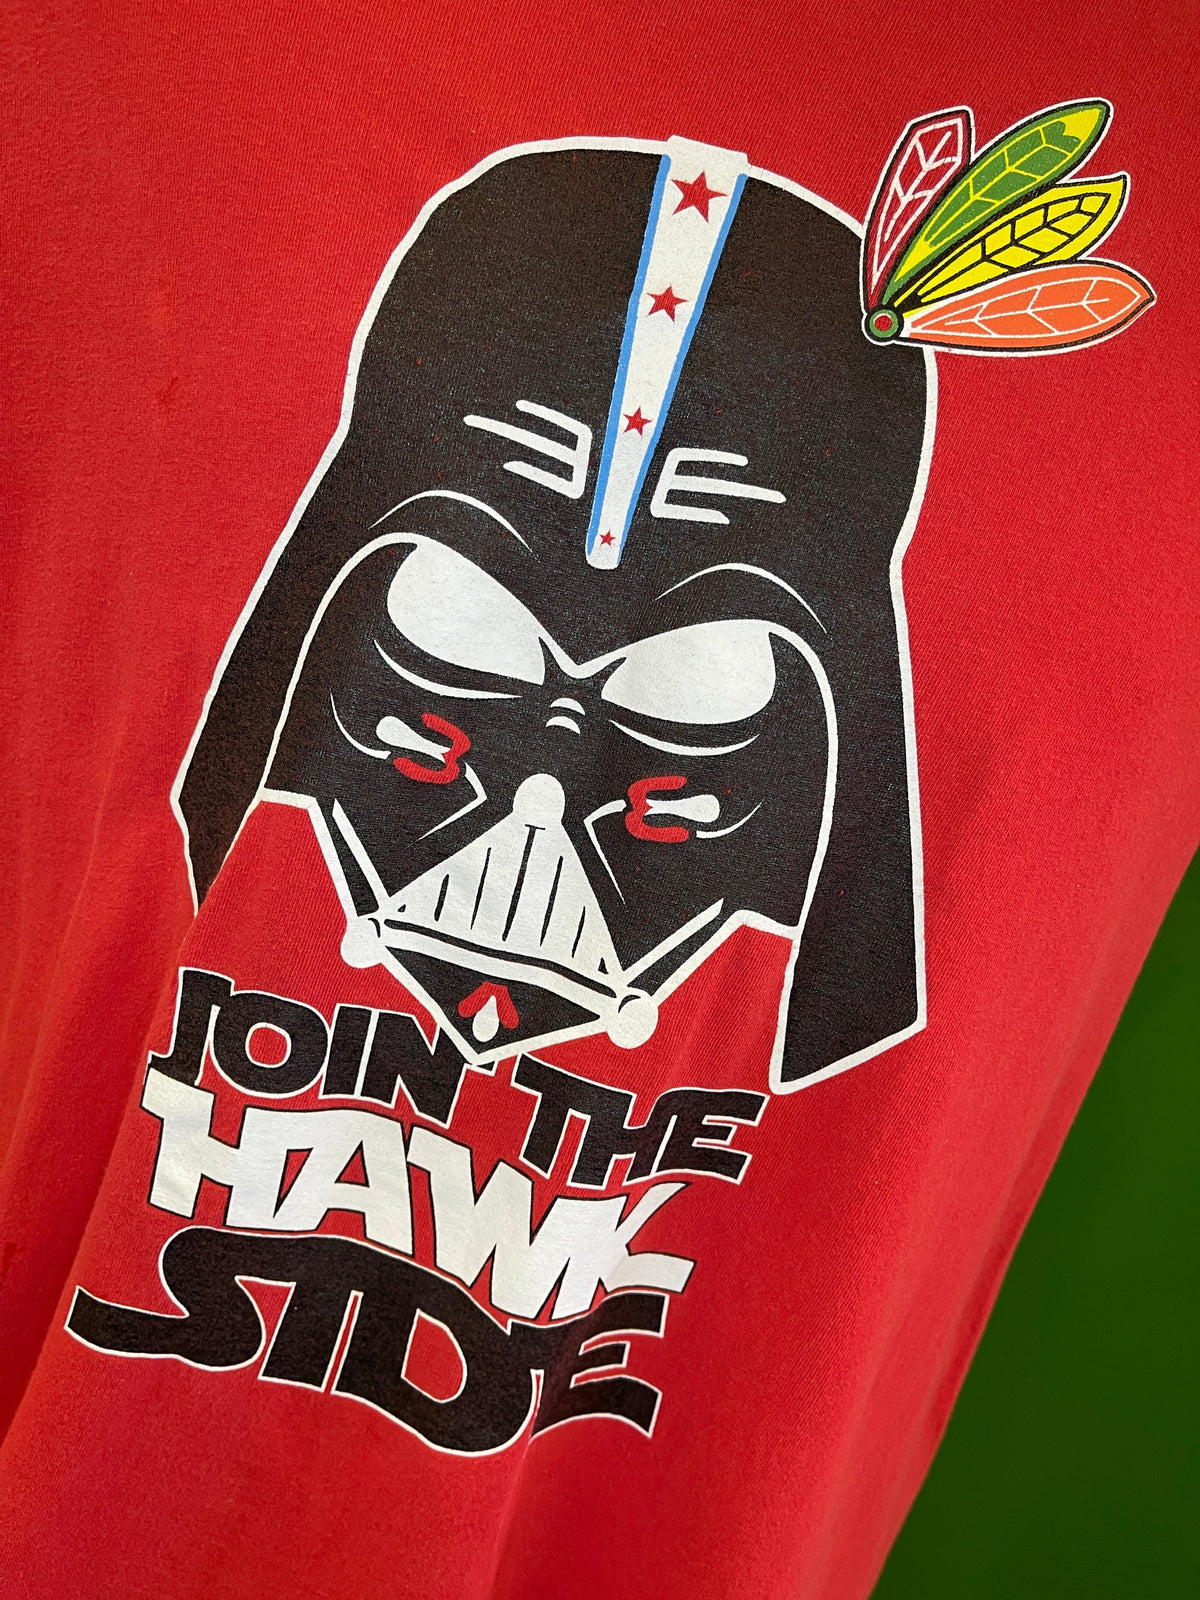 NHL Chicago Blackhawks Stars Wars "Join the Hawks Side" T-Shirt Men's Medium